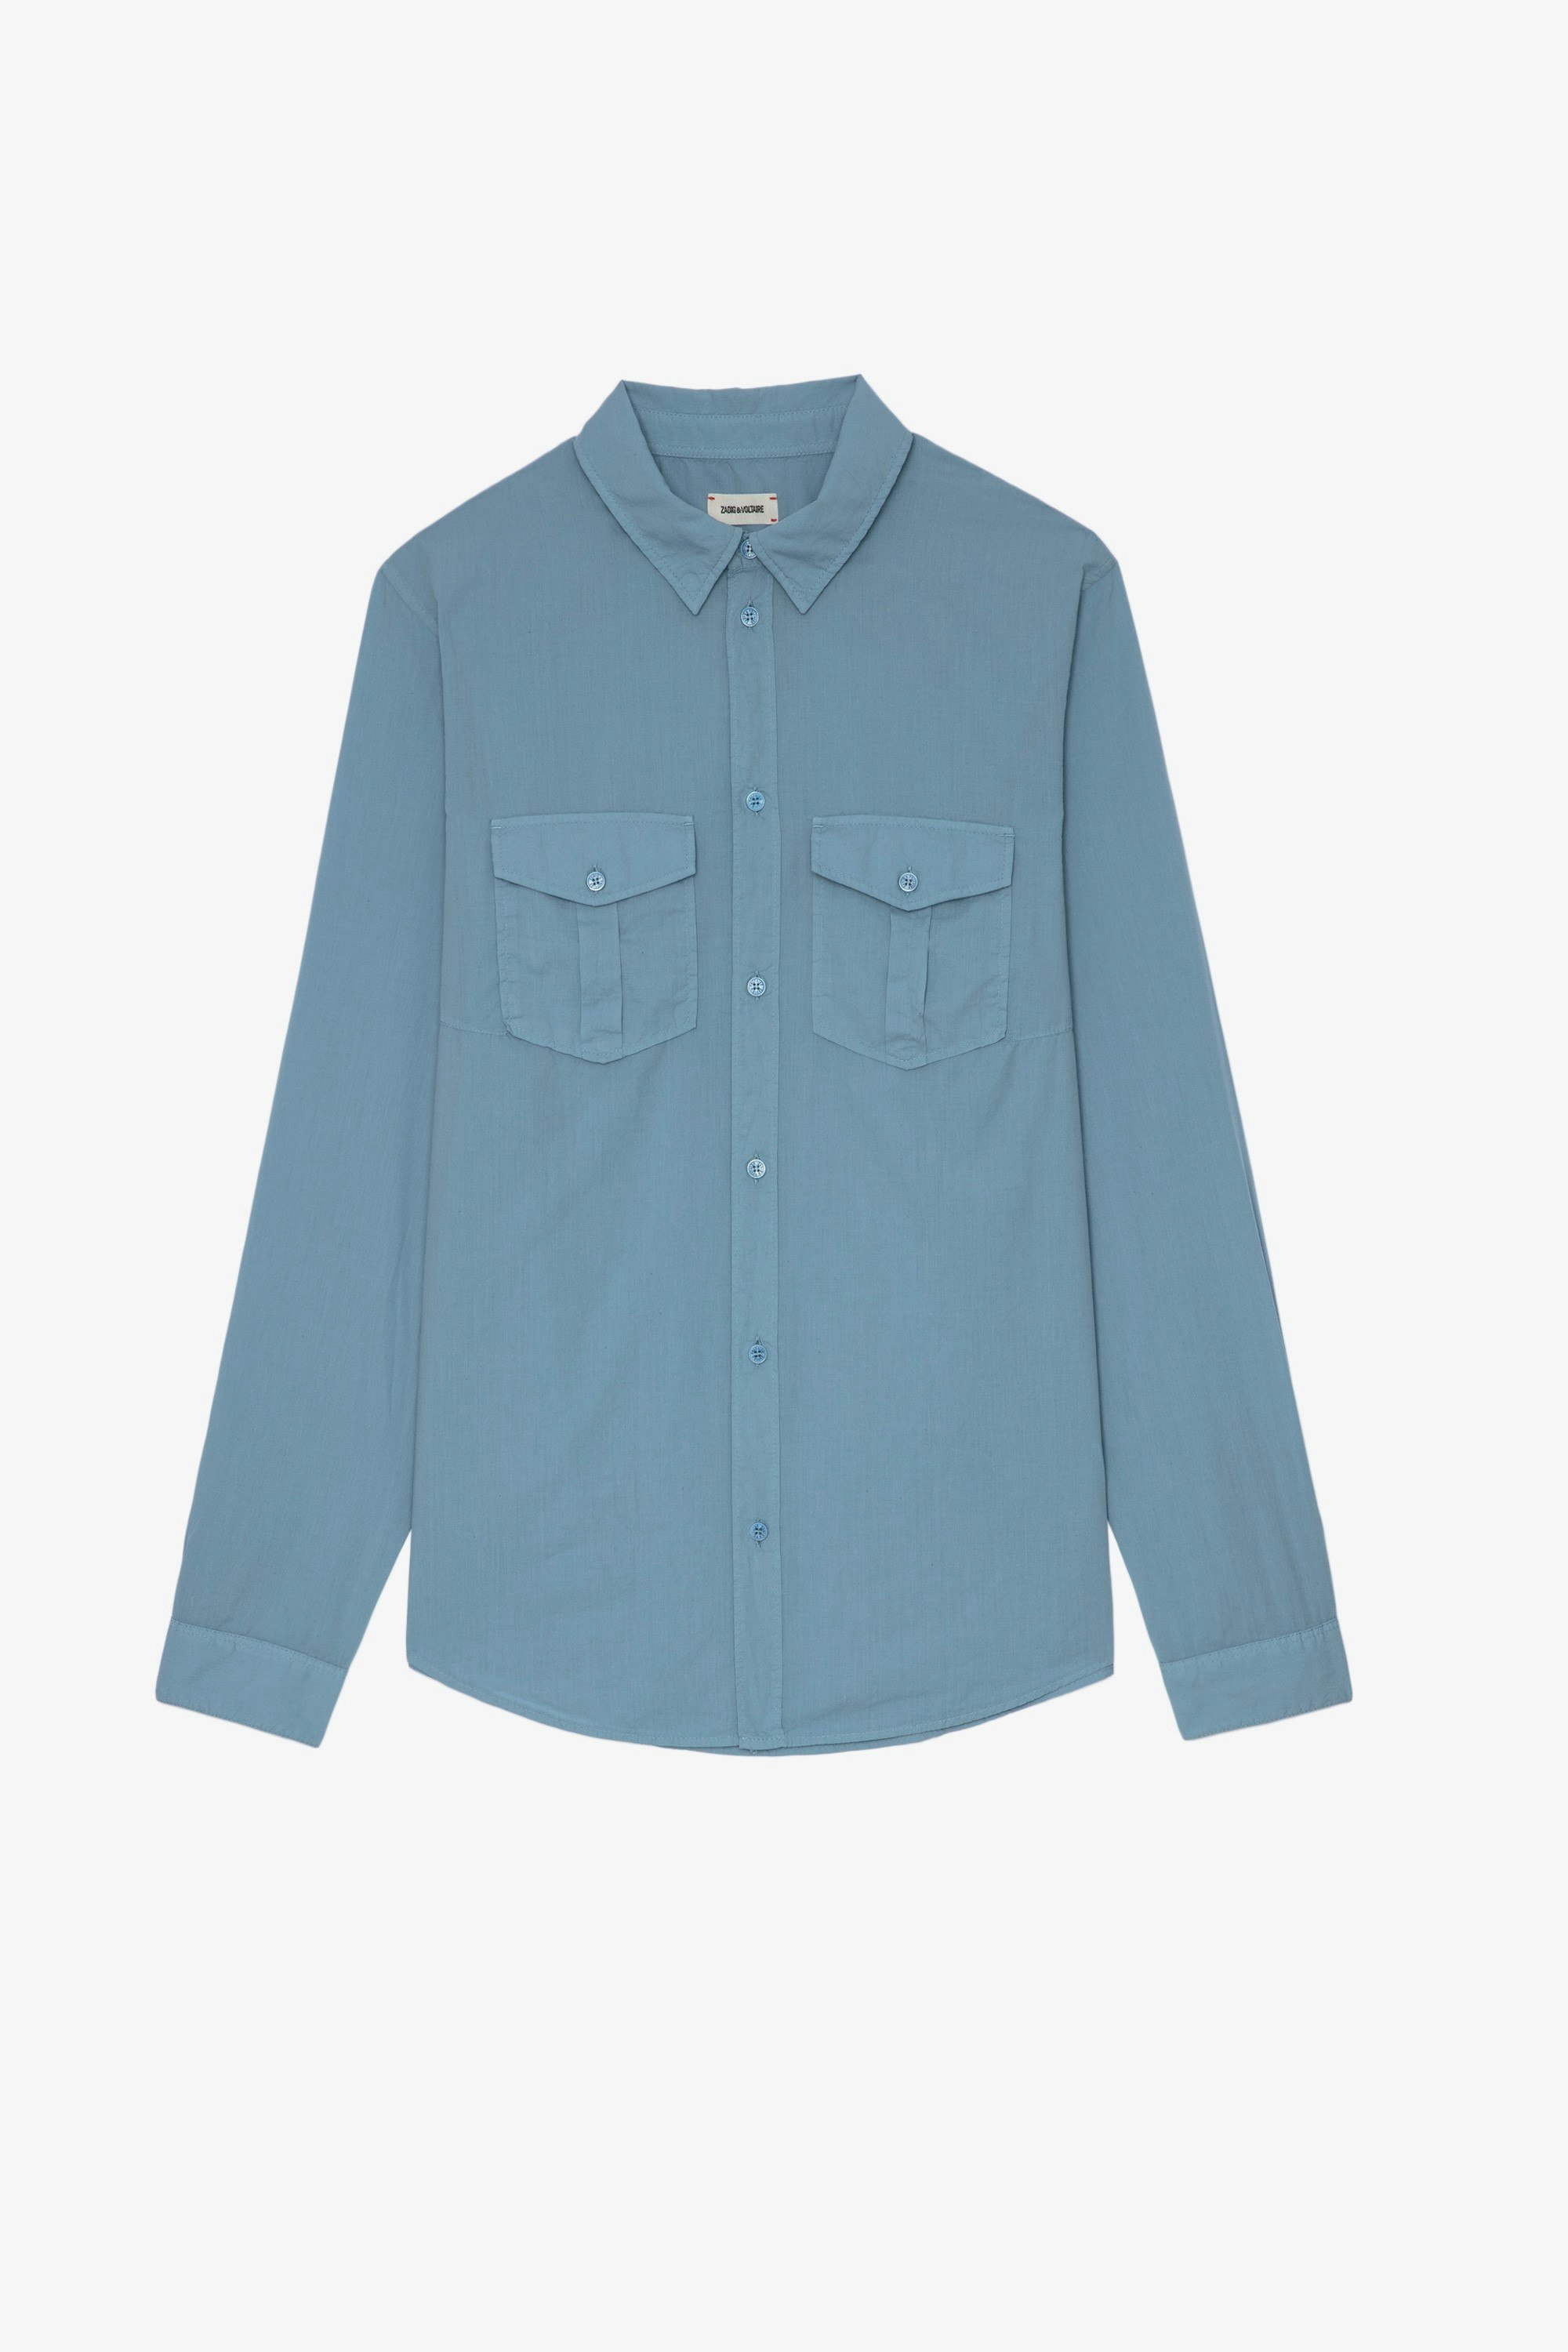 Thibaut シャツ Men’s sky-blue cotton shirt